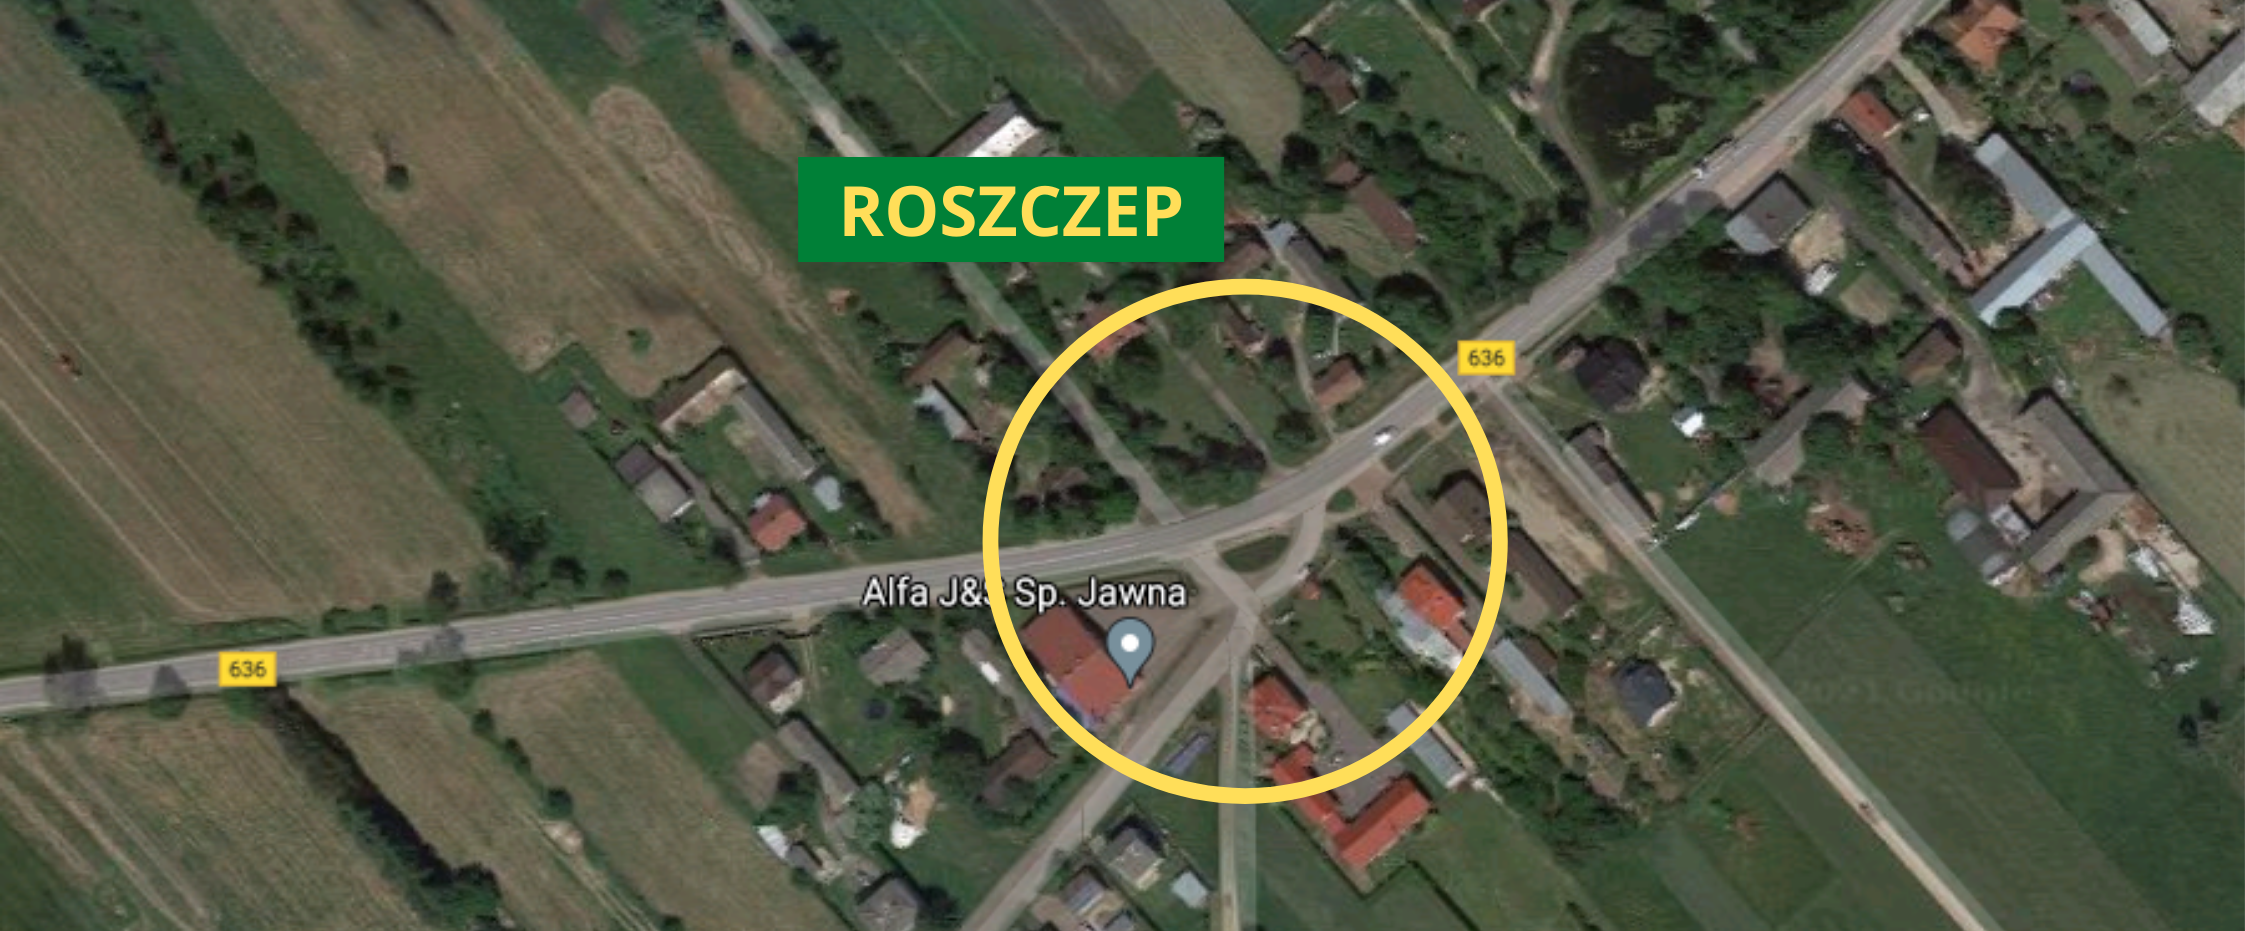 Screen z GoogleMaps na skrzyżowanie w Roszczepie